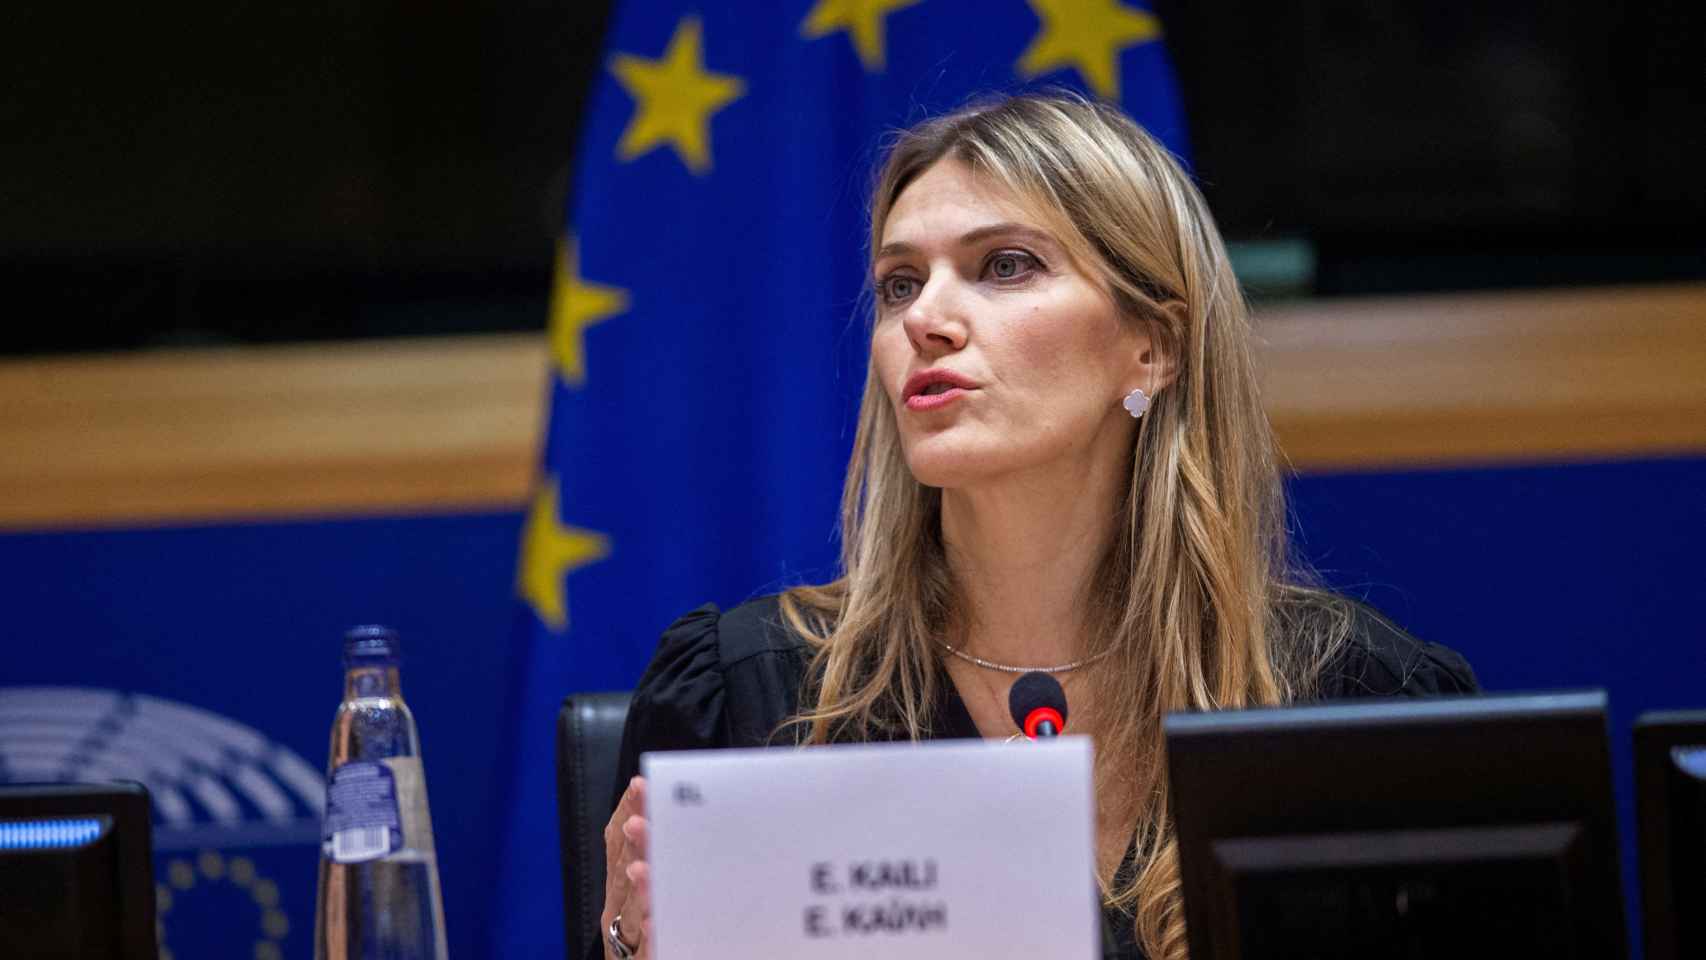 La socialdemócrata griega Eva Kaili, en el centro del escándalo de corrupción, es una de las 14 vicepresidentas del Parlamento Europeo